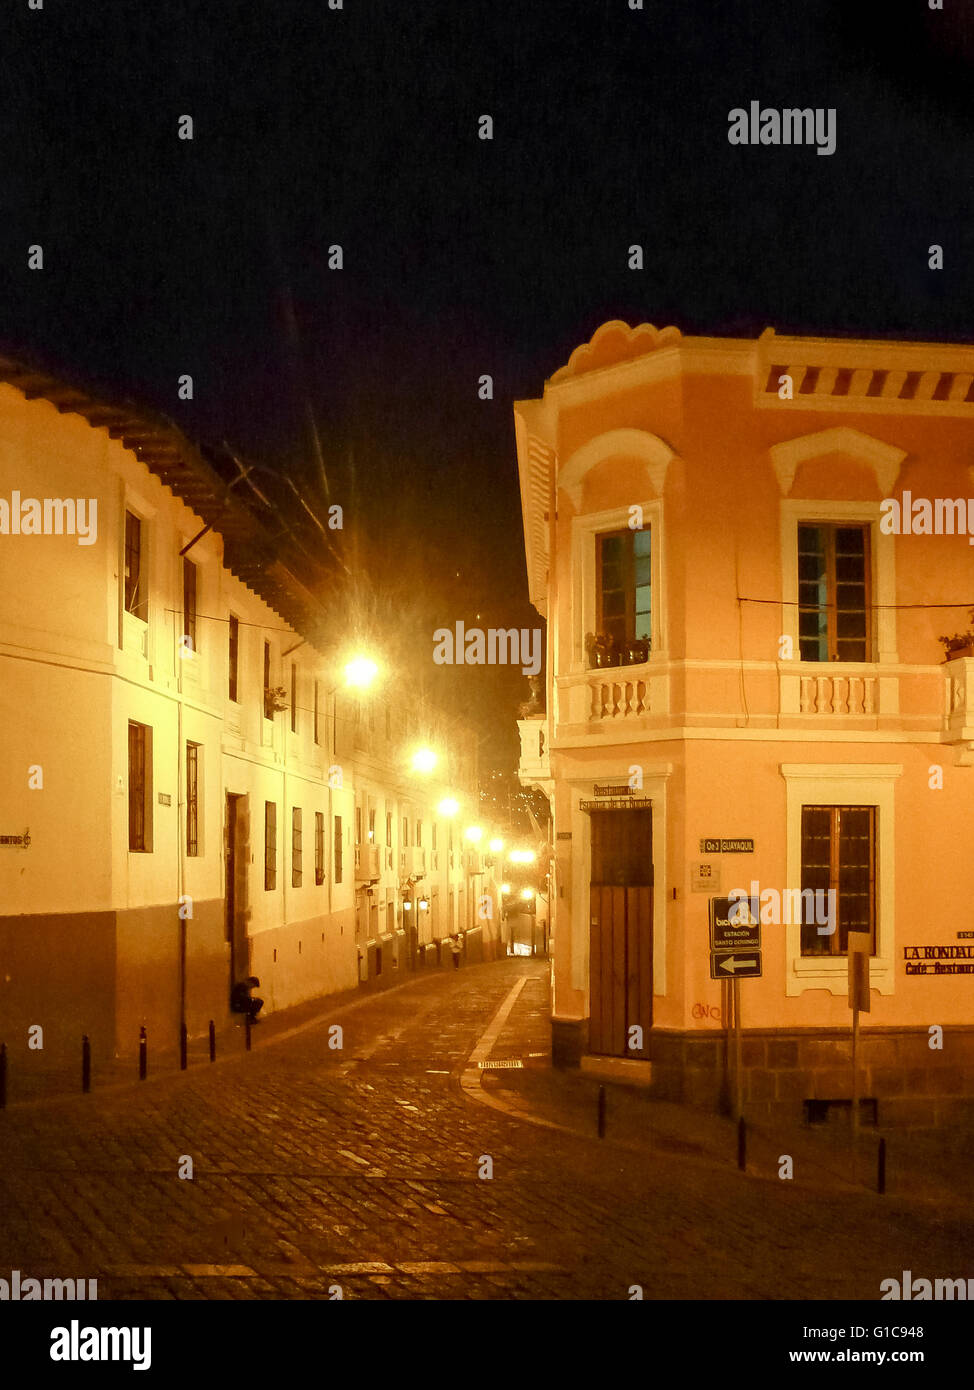 QUITO, ECUADOR, ottobre - 2015 - NOTTE La scena urbana di La Ronda, un tradizionale stile coloniale street situato nel cento storico Foto Stock